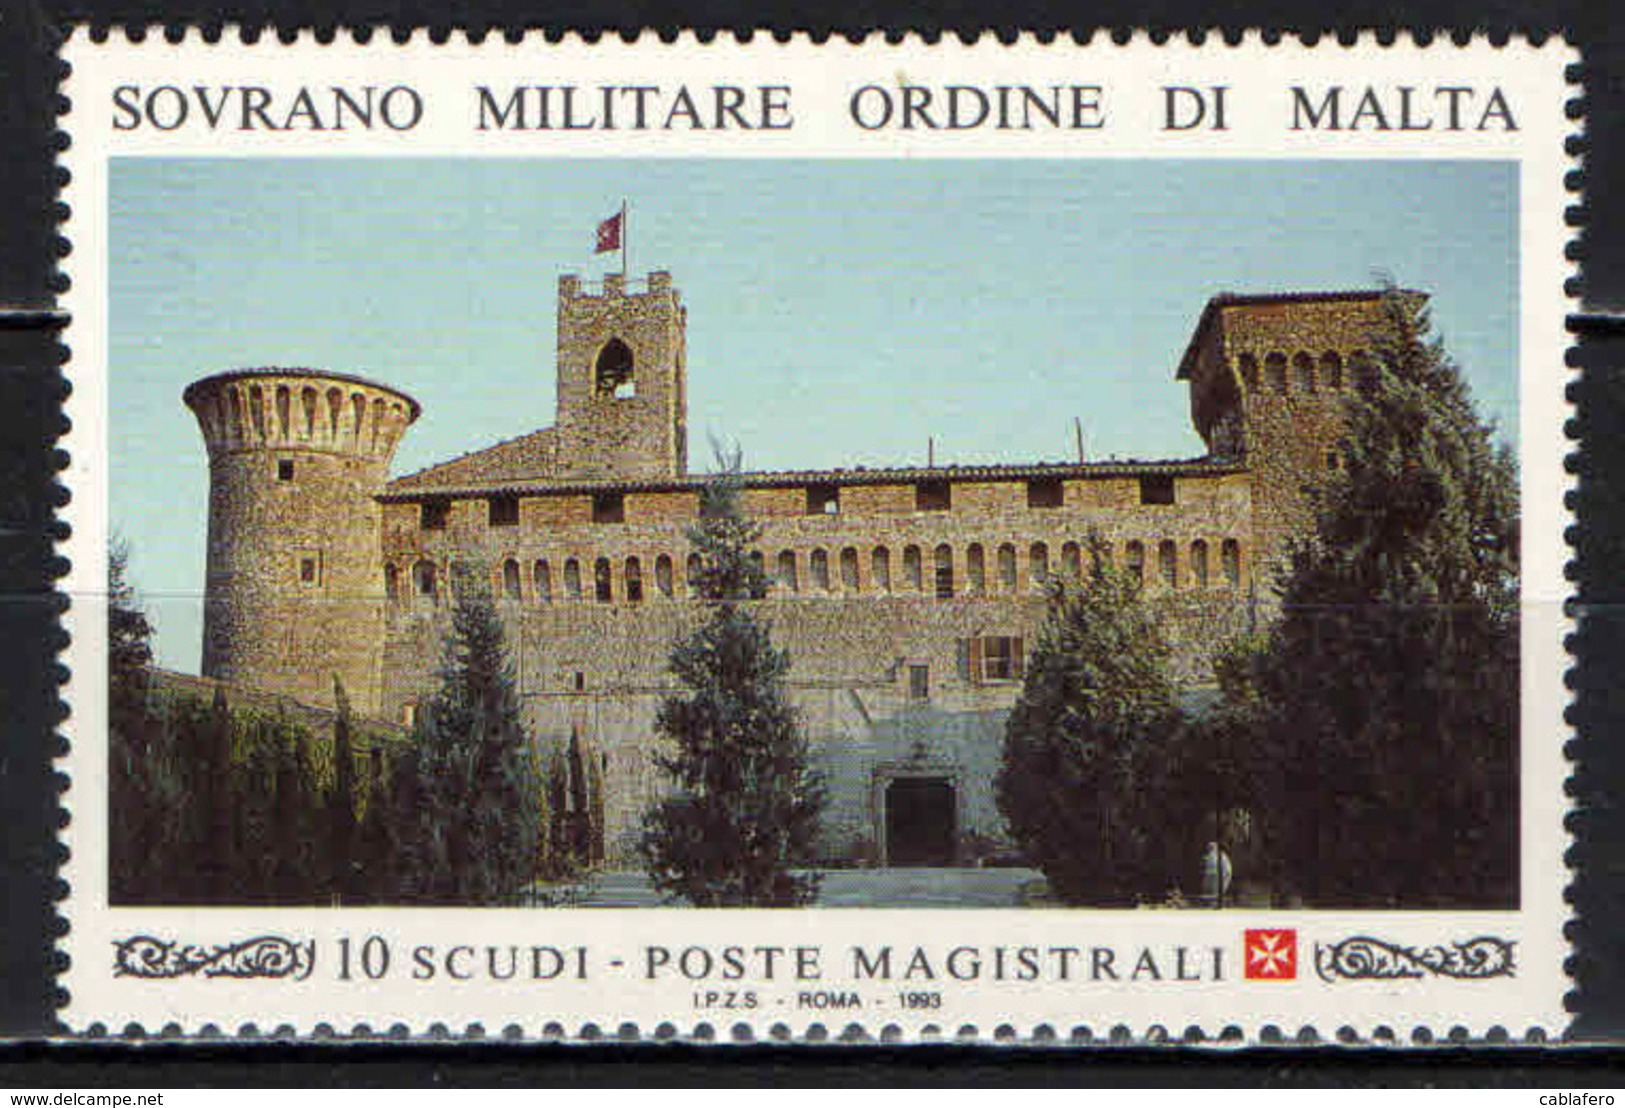 SMOM - 1993 - IL CASTELLO DELLO S.M.O.M. A MAGIONE (PERUGIA) - MNH - Sovrano Militare Ordine Di Malta